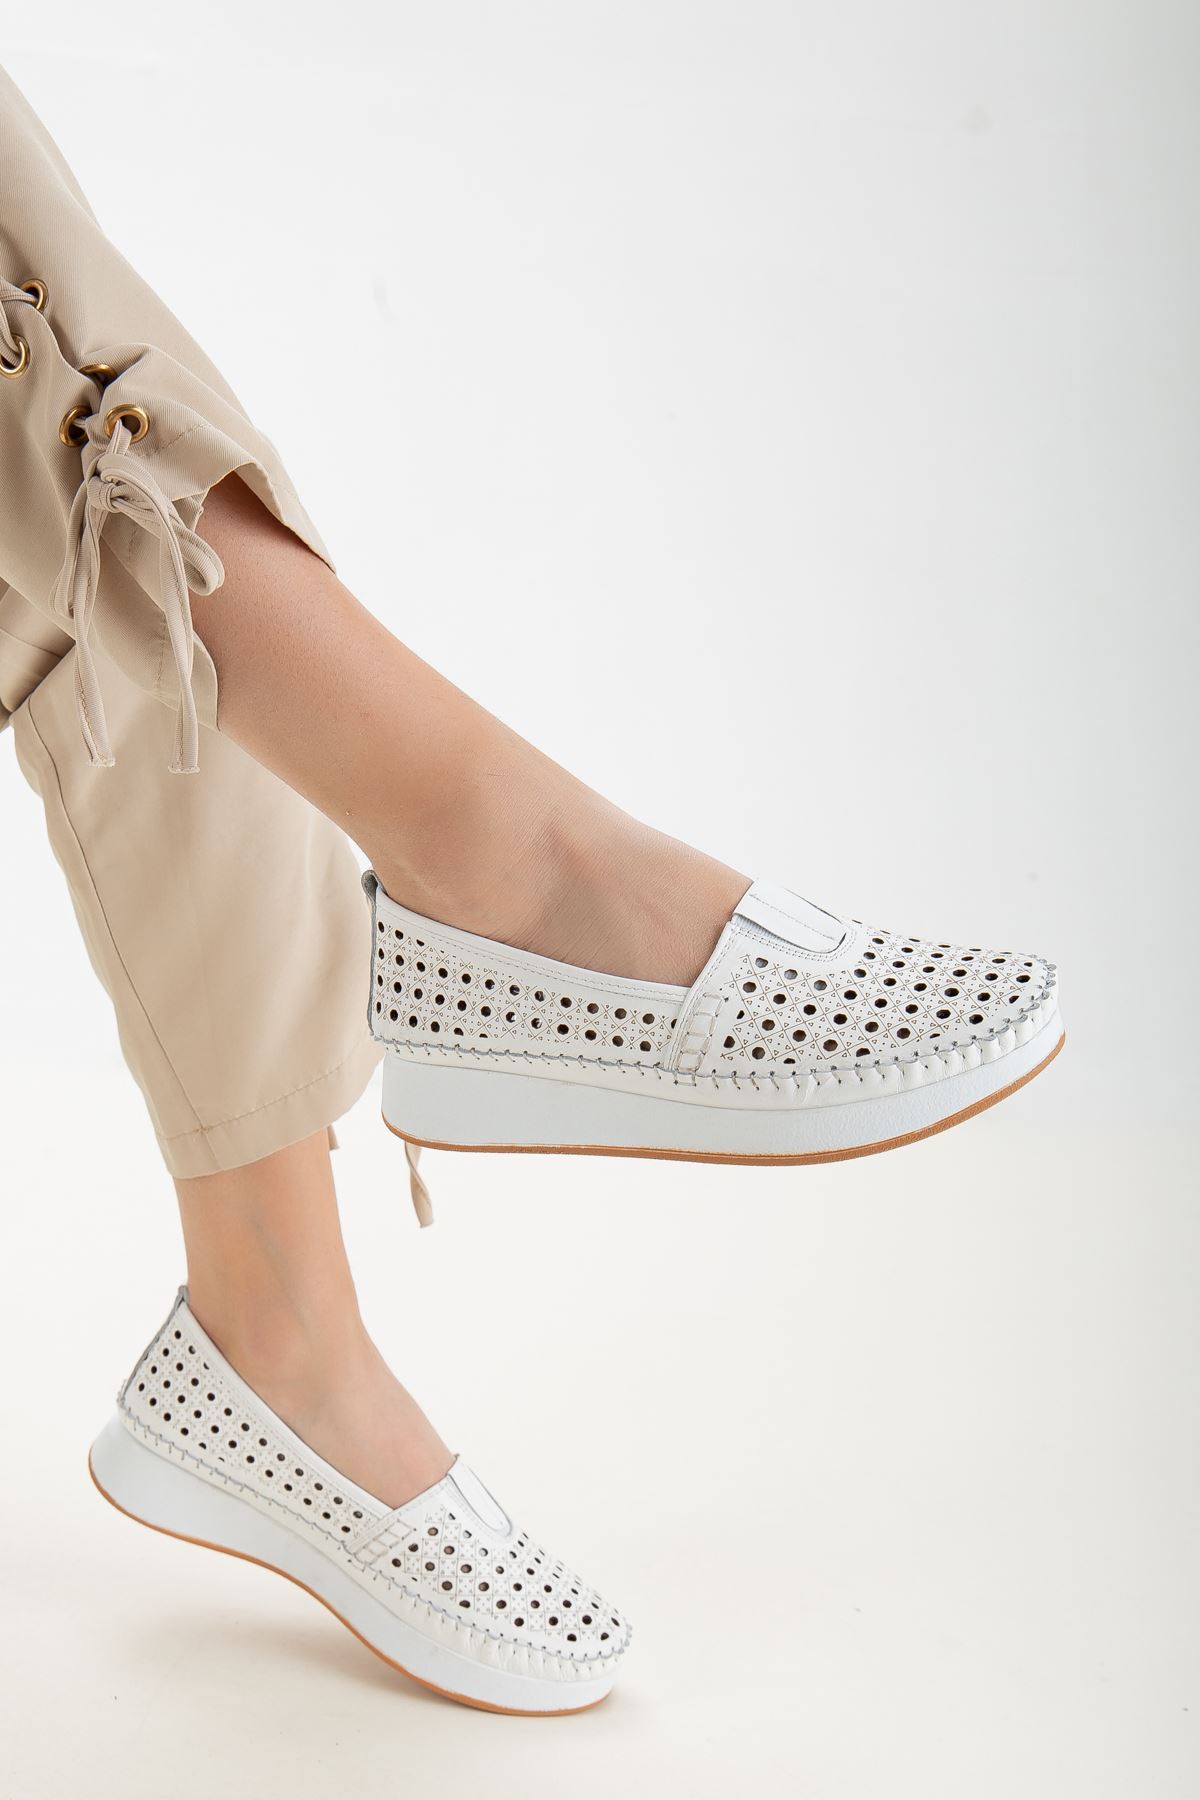 Gemma Kadın Hakiki Deri Günlük Ayakkabı Beyaz